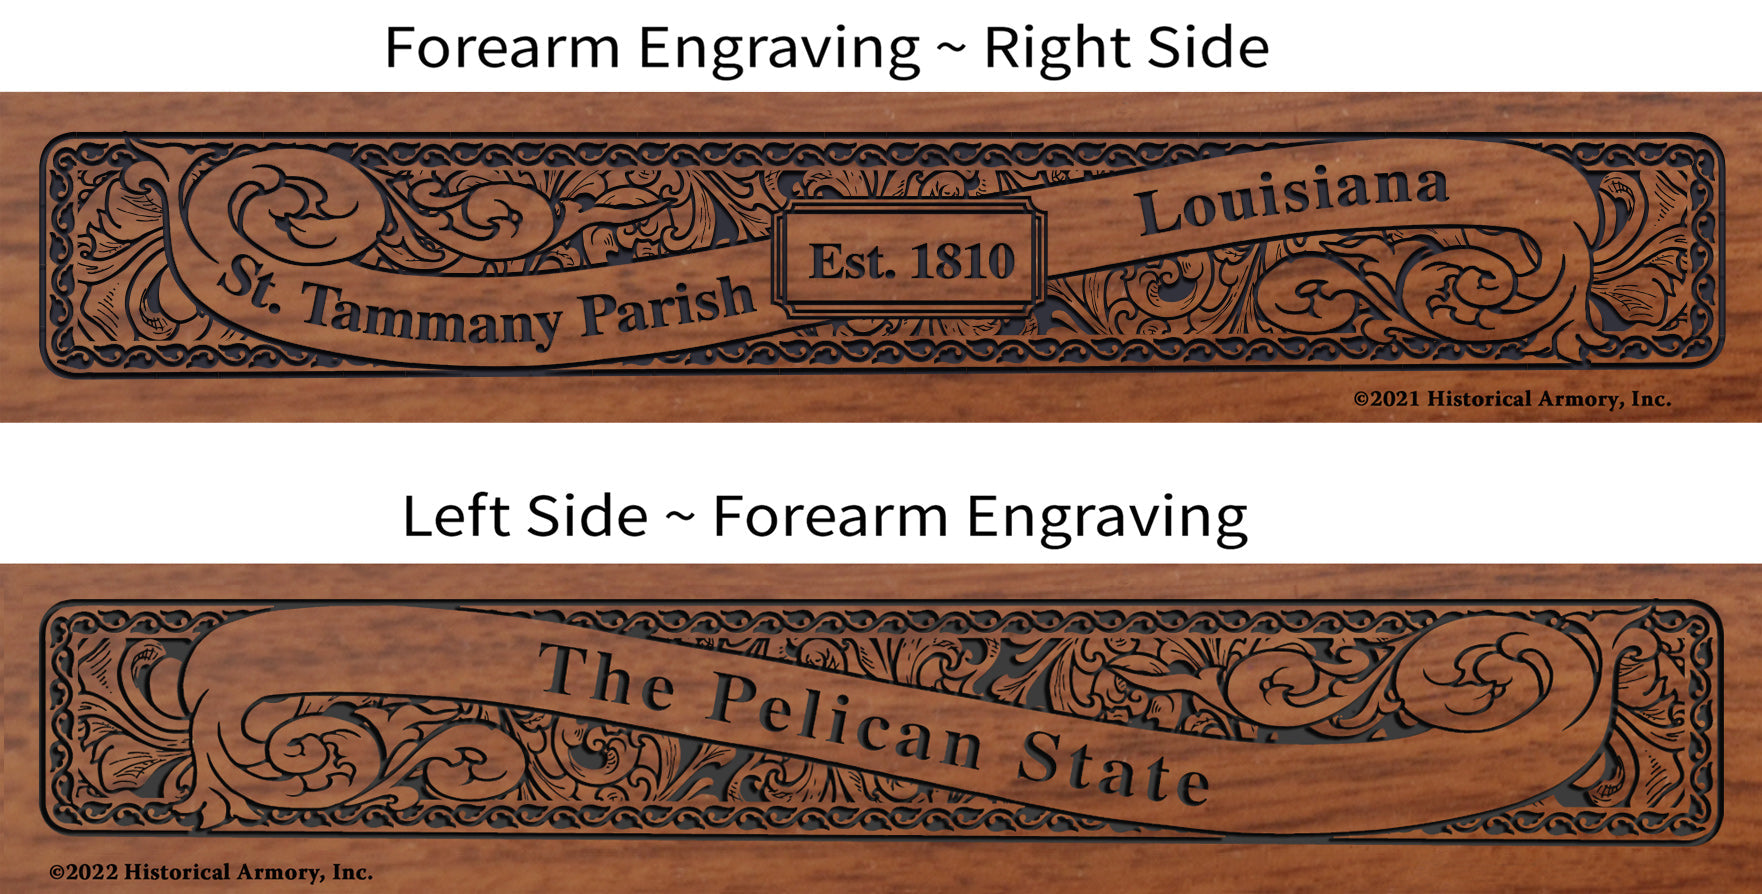 St. Tammany Parish Louisiana Engraved Rifle Forearm Right-Side